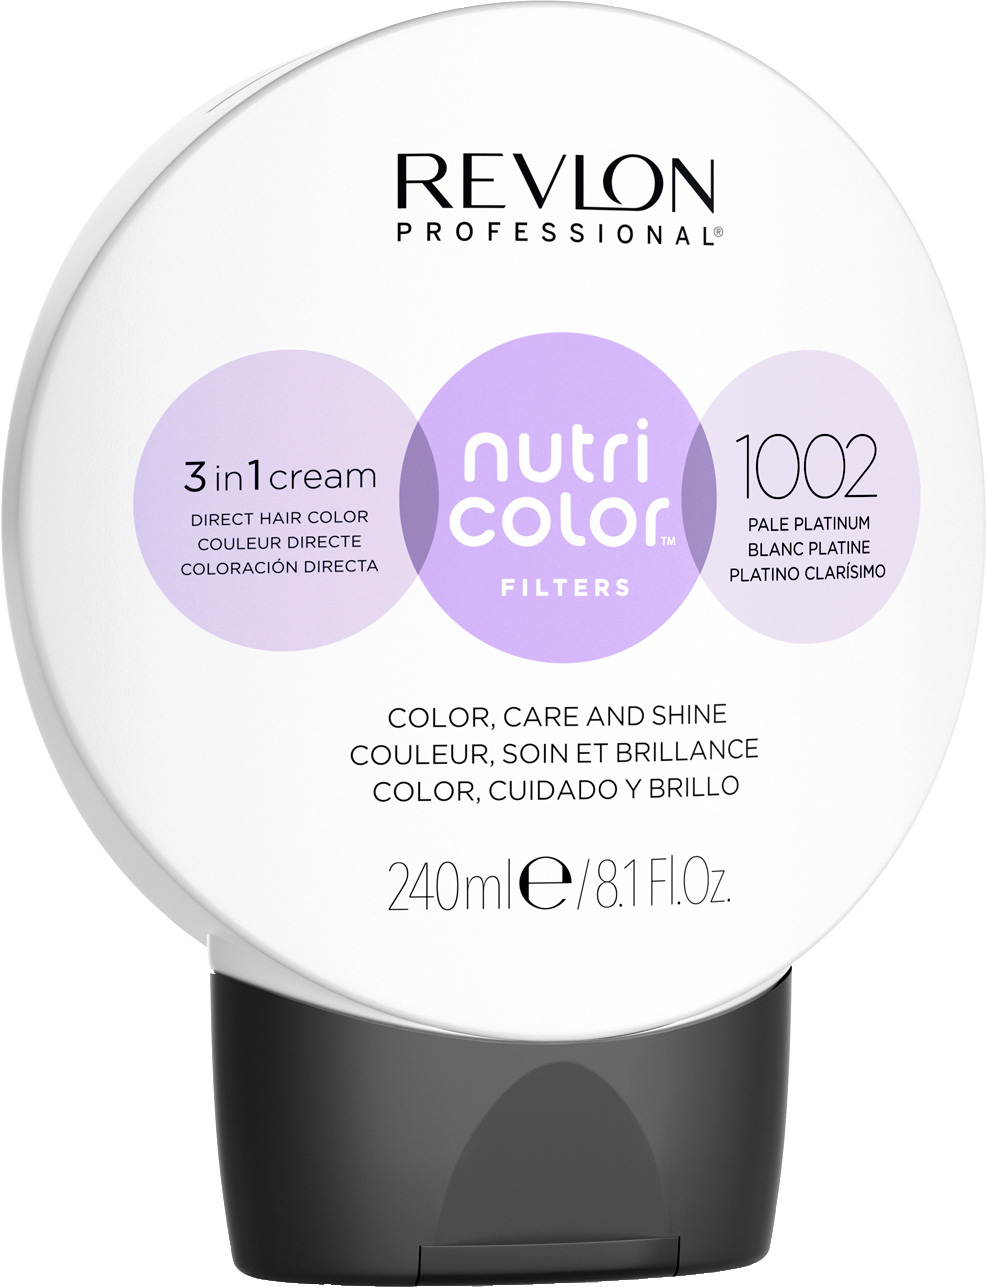 Revlon Nutri Color 1002 pale plat. 240ml